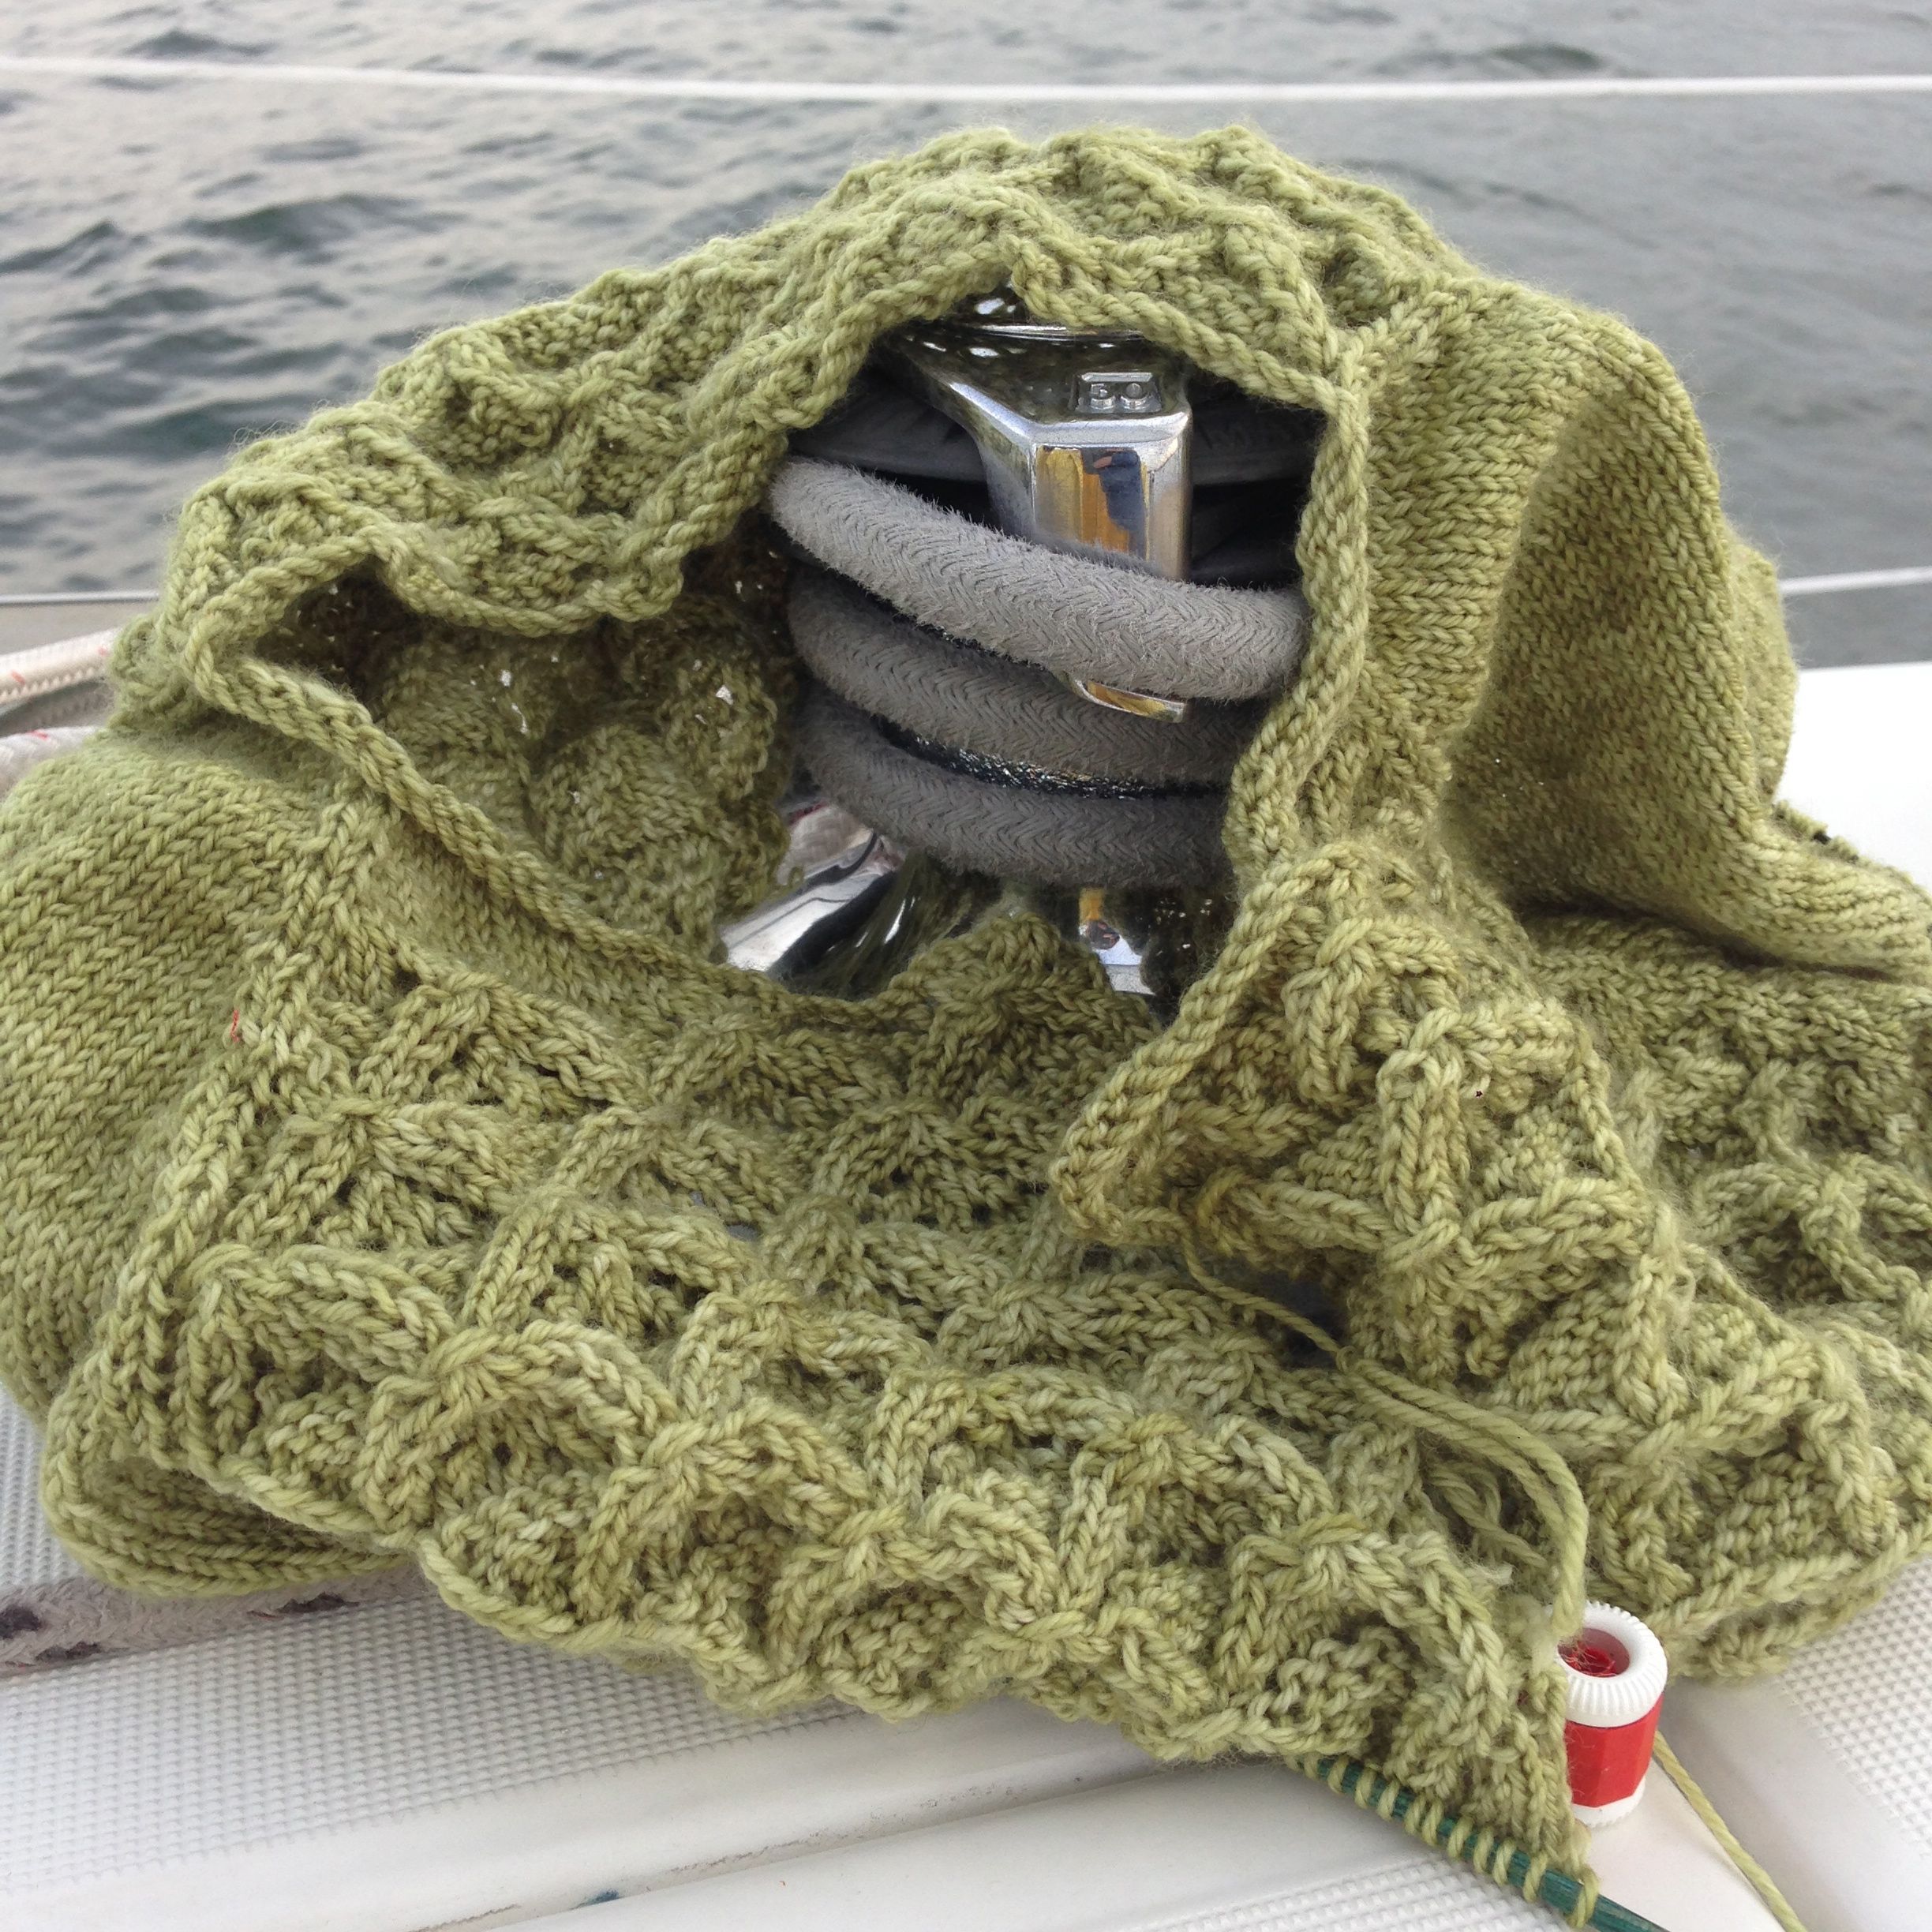 Easy Knitting for Summer Travels